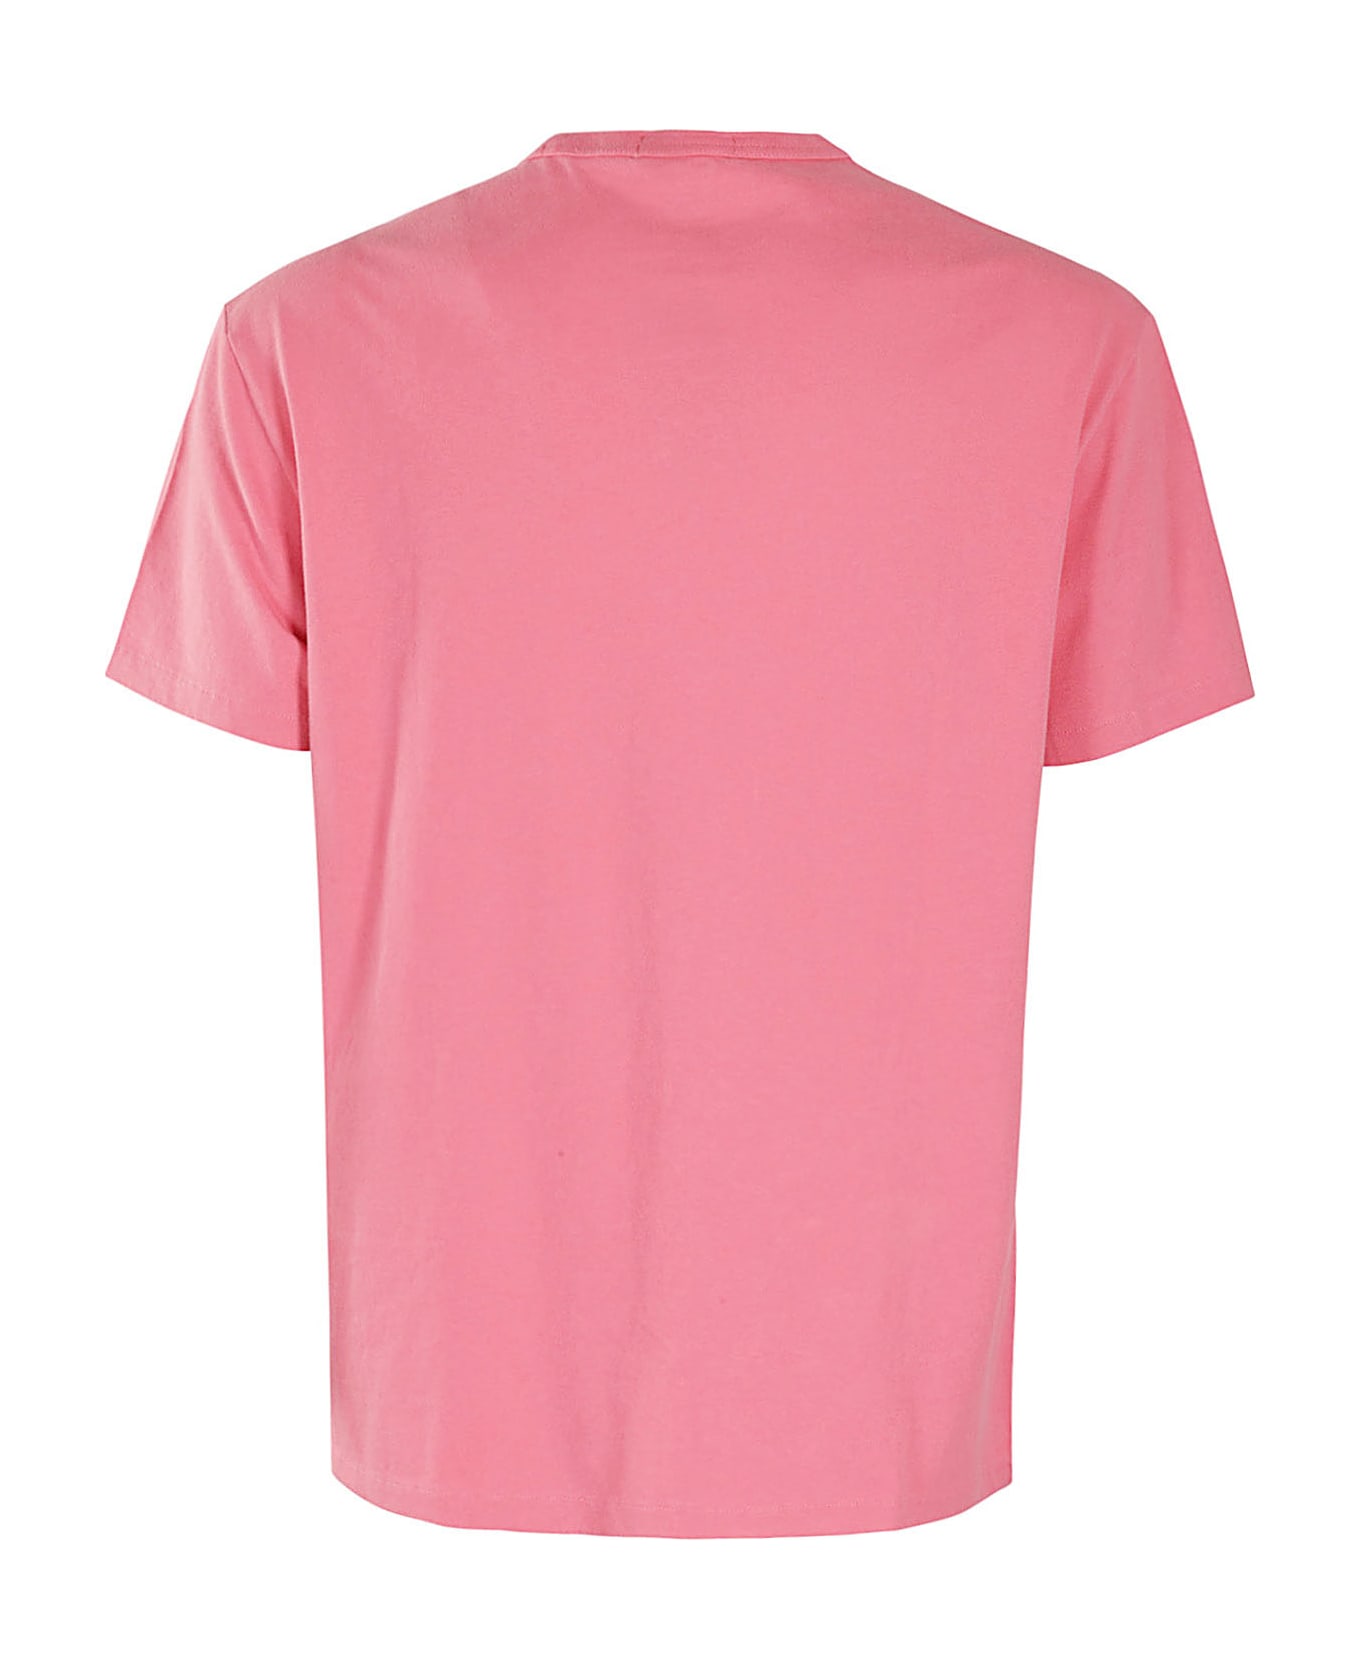 Polo Ralph Lauren Short Sleeve T Shirt - Pale Red